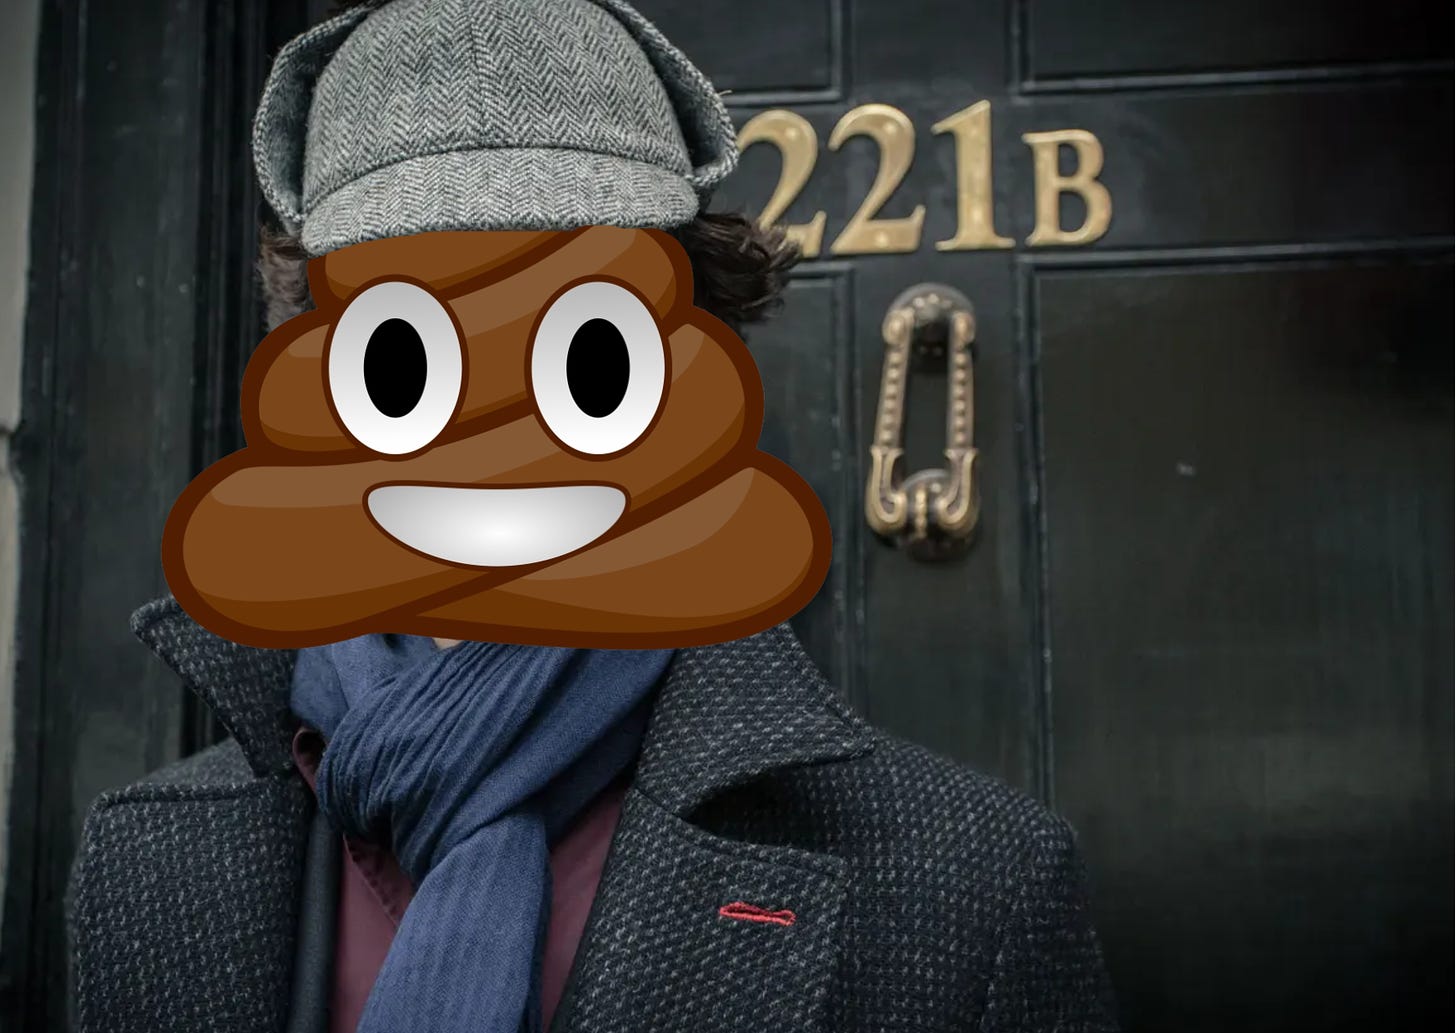 Sherlock Holmes but his head is a poop emoji